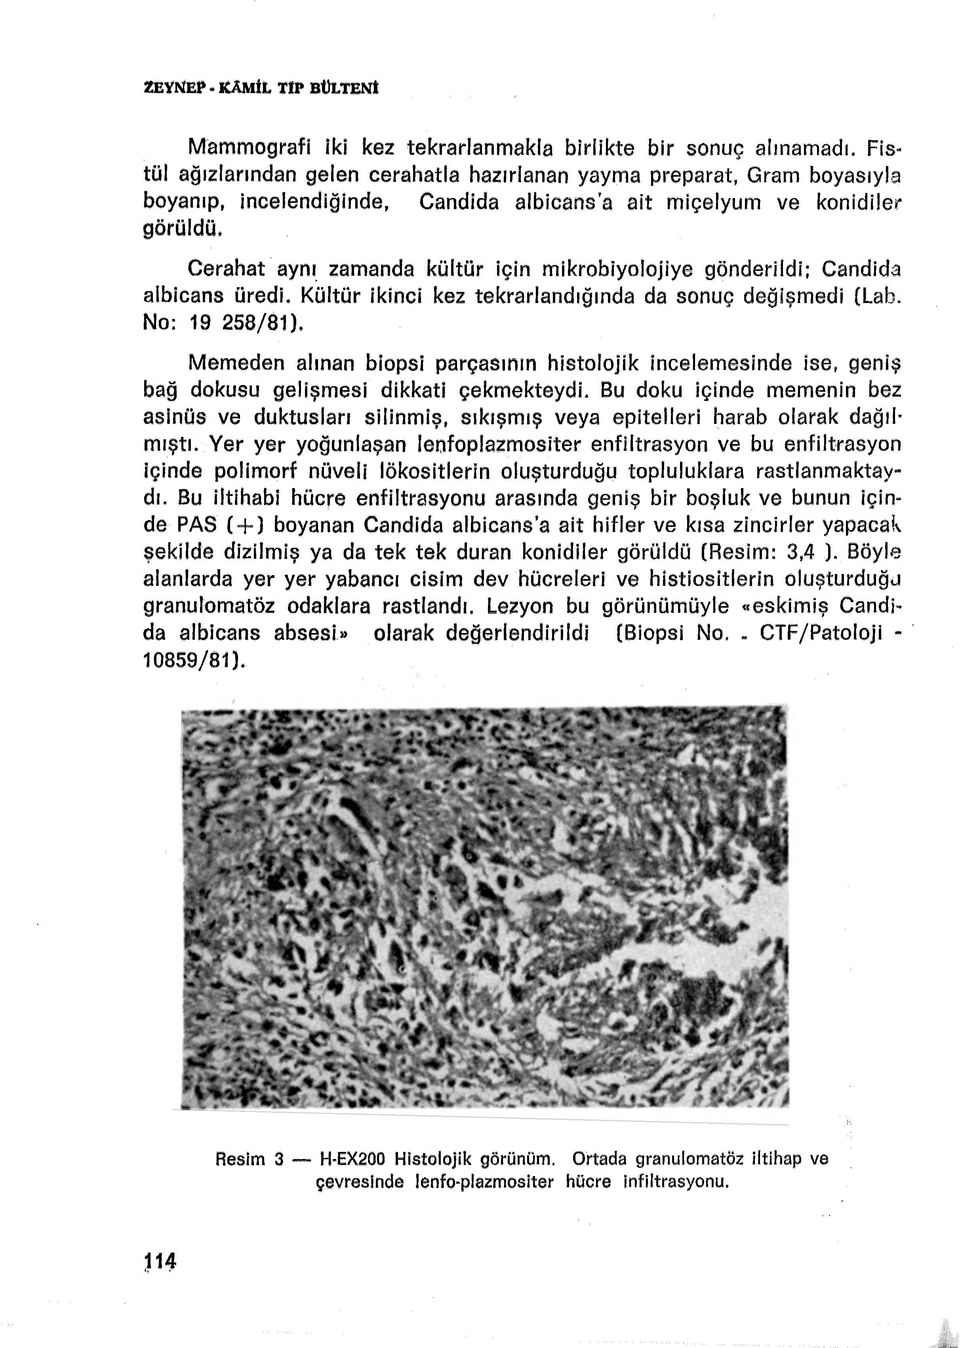 zamanda kültür için mikrobiyolojiye gönderildi: Candida albicans üredi. Kültür ikinci kez tekrarlandığında da sonuç değişmedi (Lab. No: 19 258/81).